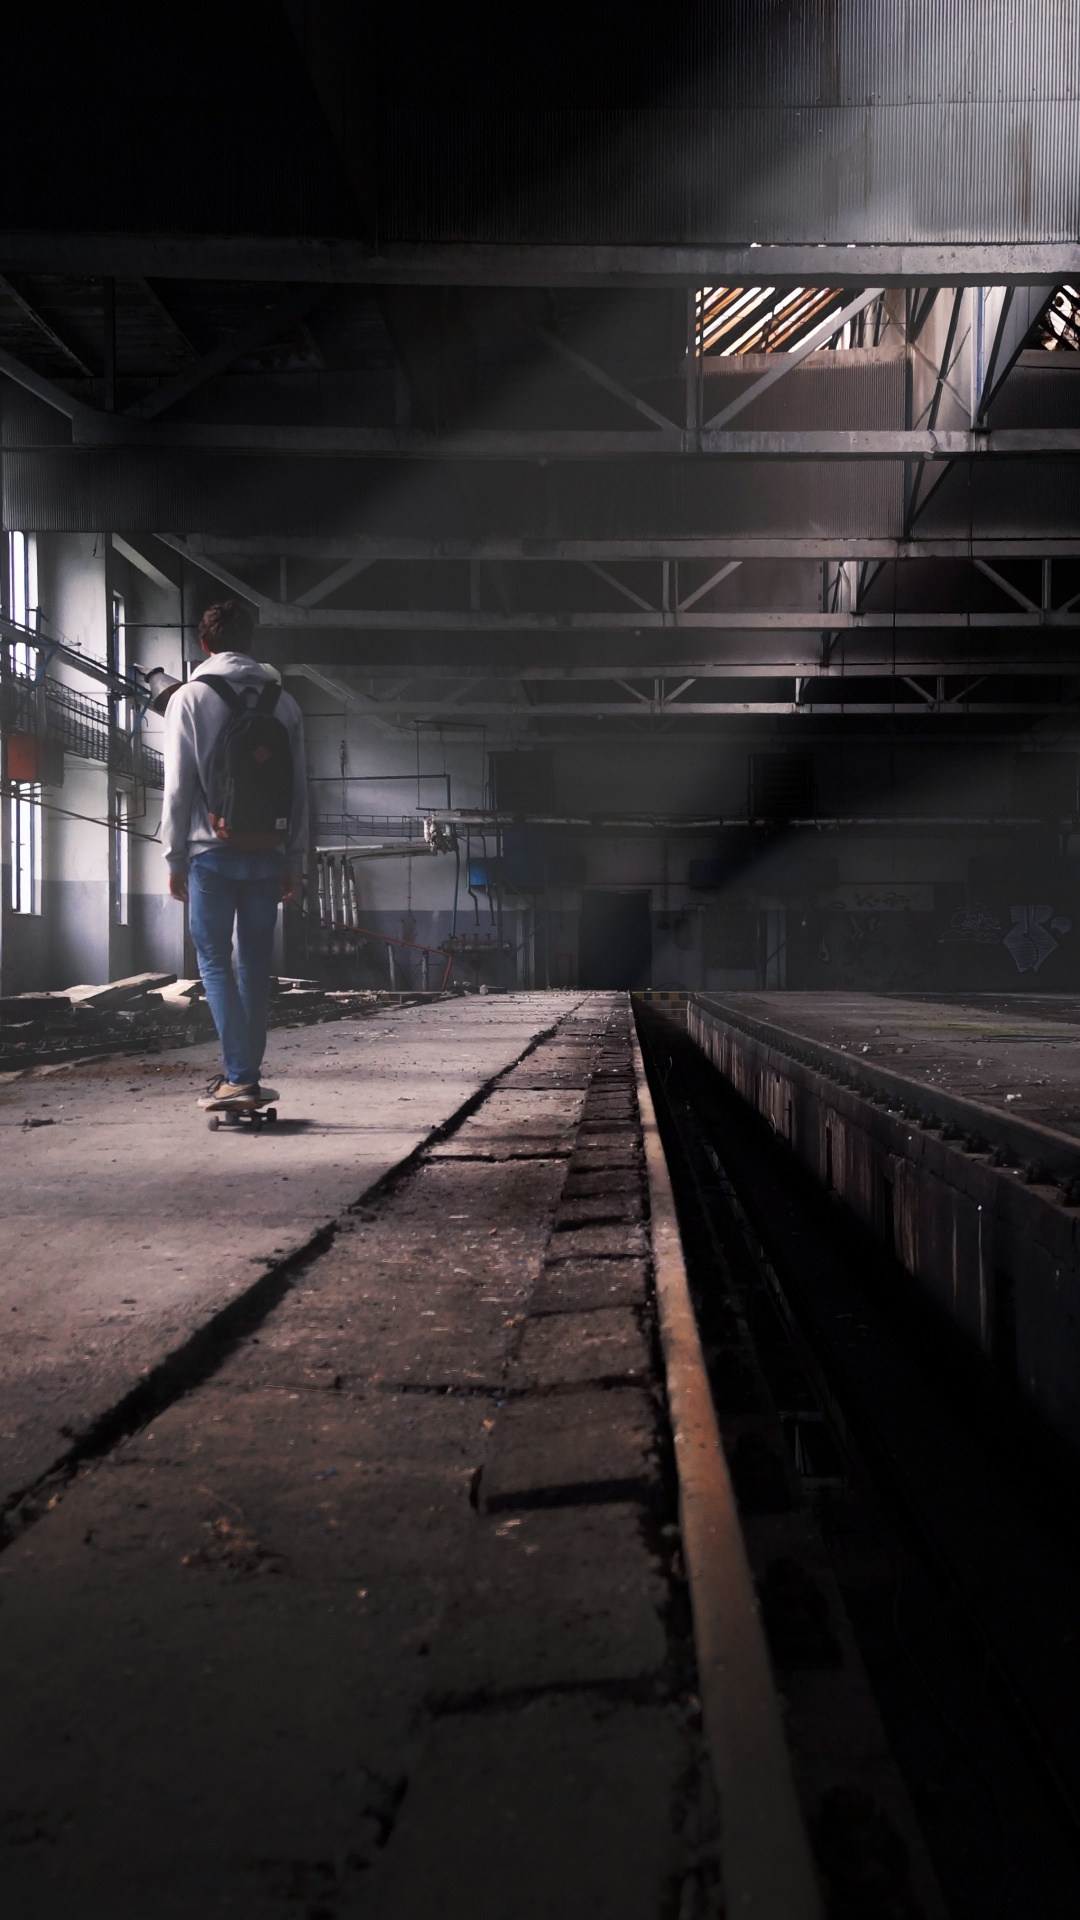 Hombre en Blue Jeans Caminando en la Estación de Tren. Wallpaper in 1080x1920 Resolution